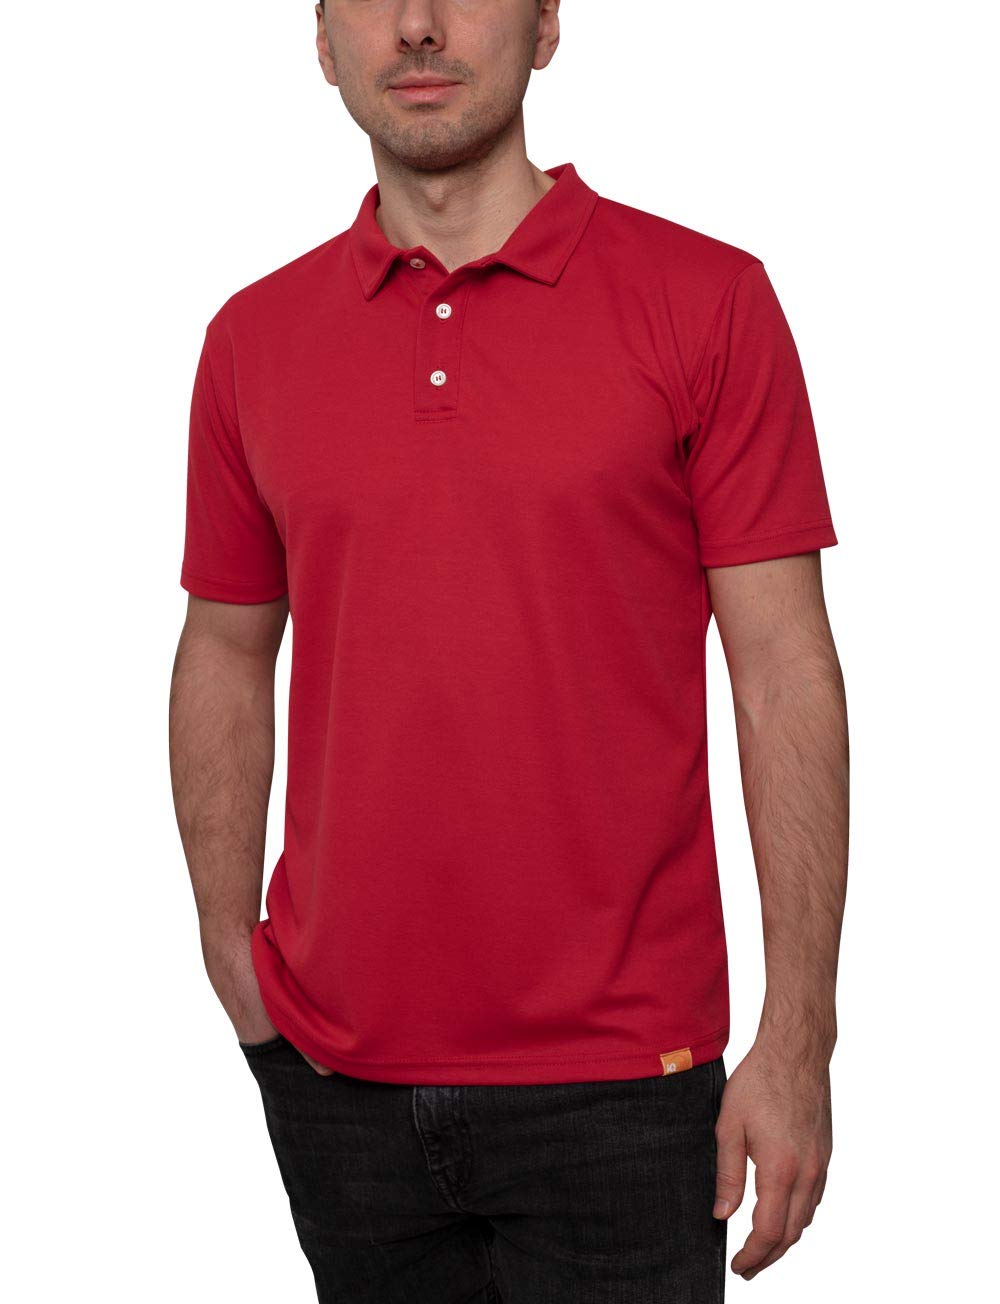 iQ-UV Herren 50 Uv-Schutz Polo Shirt, red, L